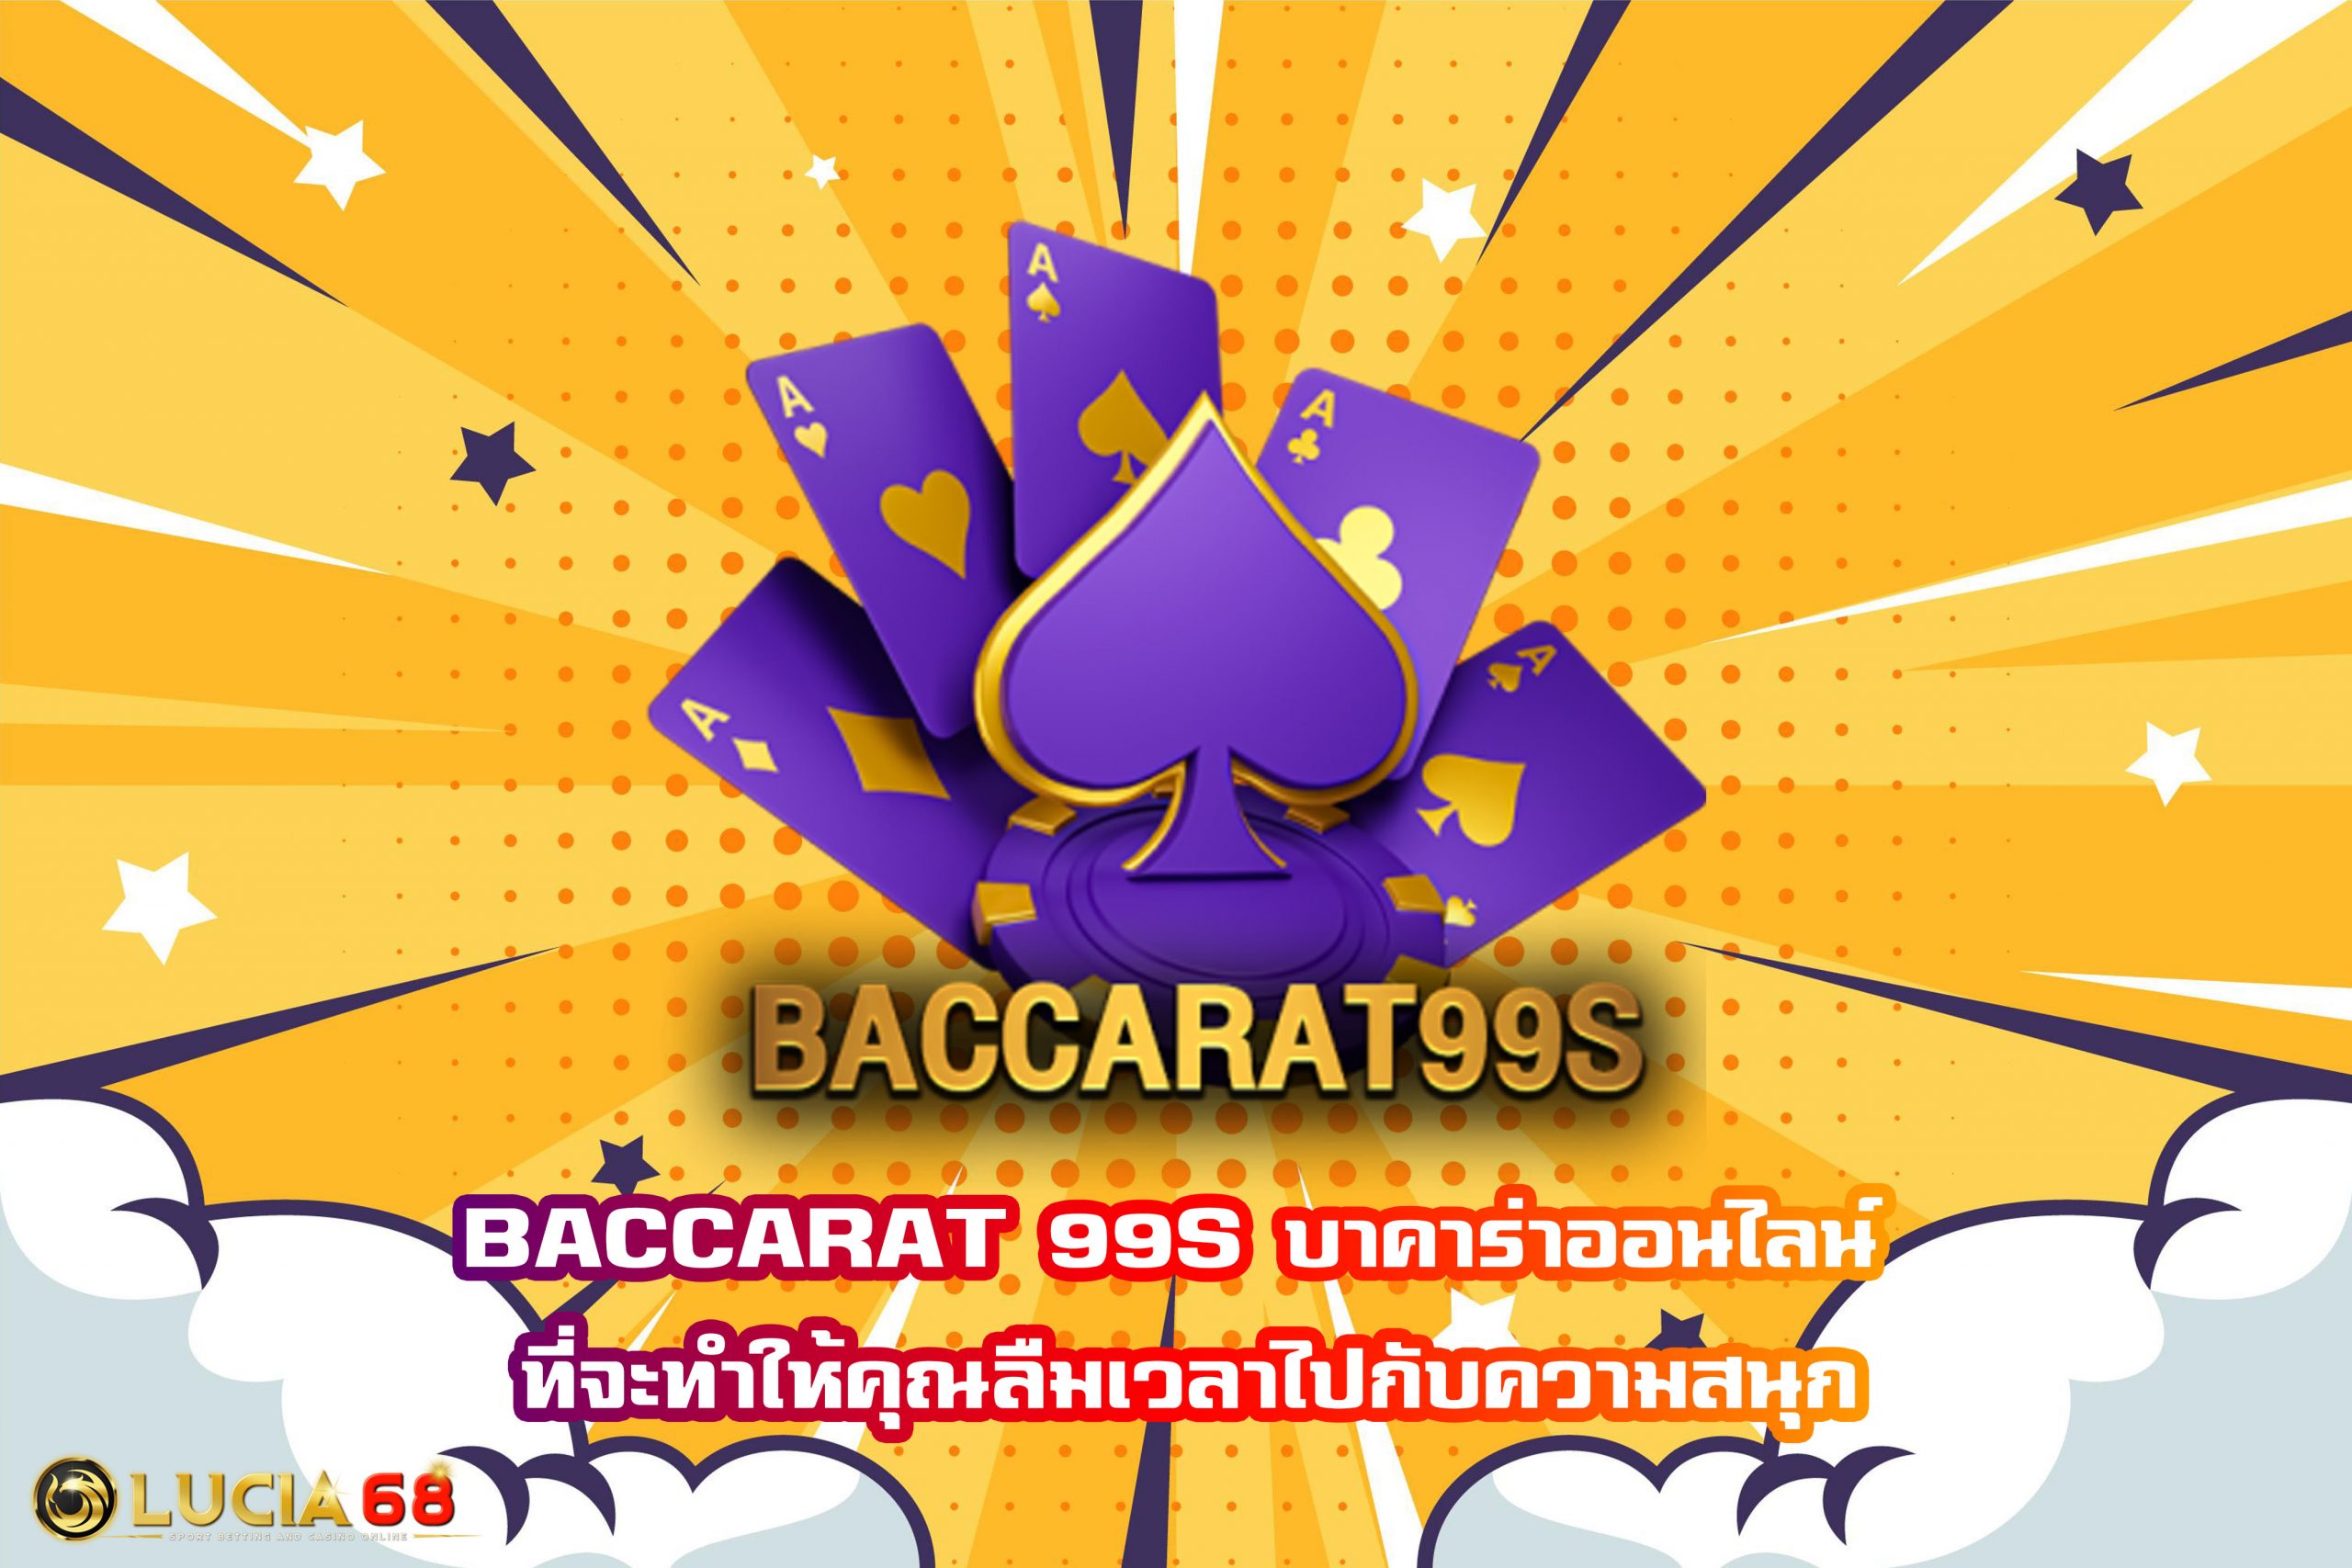 BACCARAT 99S บาคาร่าออนไลน์ ที่จะทำให้คุณลืมเวลาไปกับความสนุก